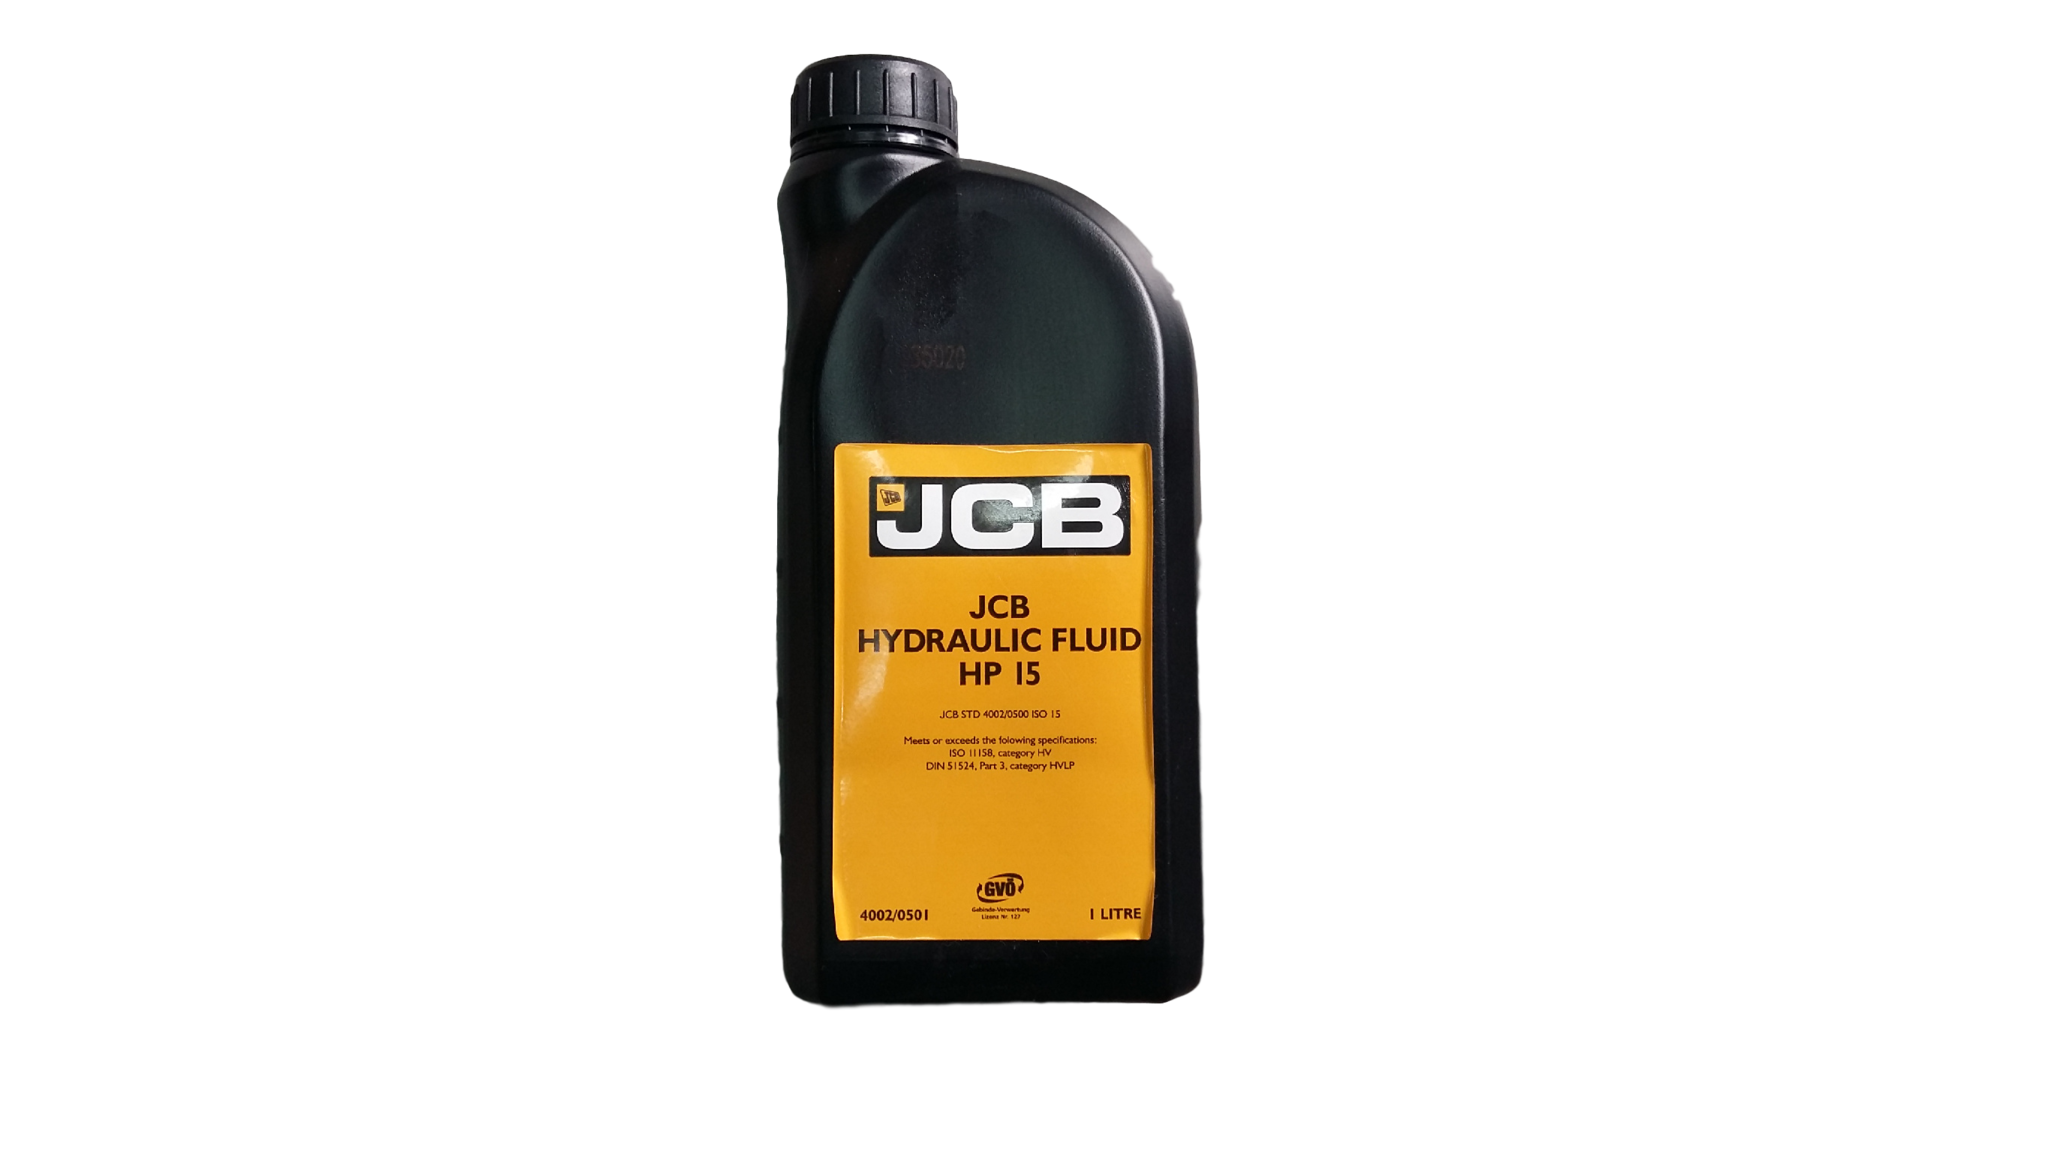 Jcb 4cx масла. Тормозная жидкость JCB 4002/0501e. Тормозная жидкость JCB 3cx. Масло тормозное JCB hp15 1л 4002/0501. Тормозная жидкость для JCB 4cx.